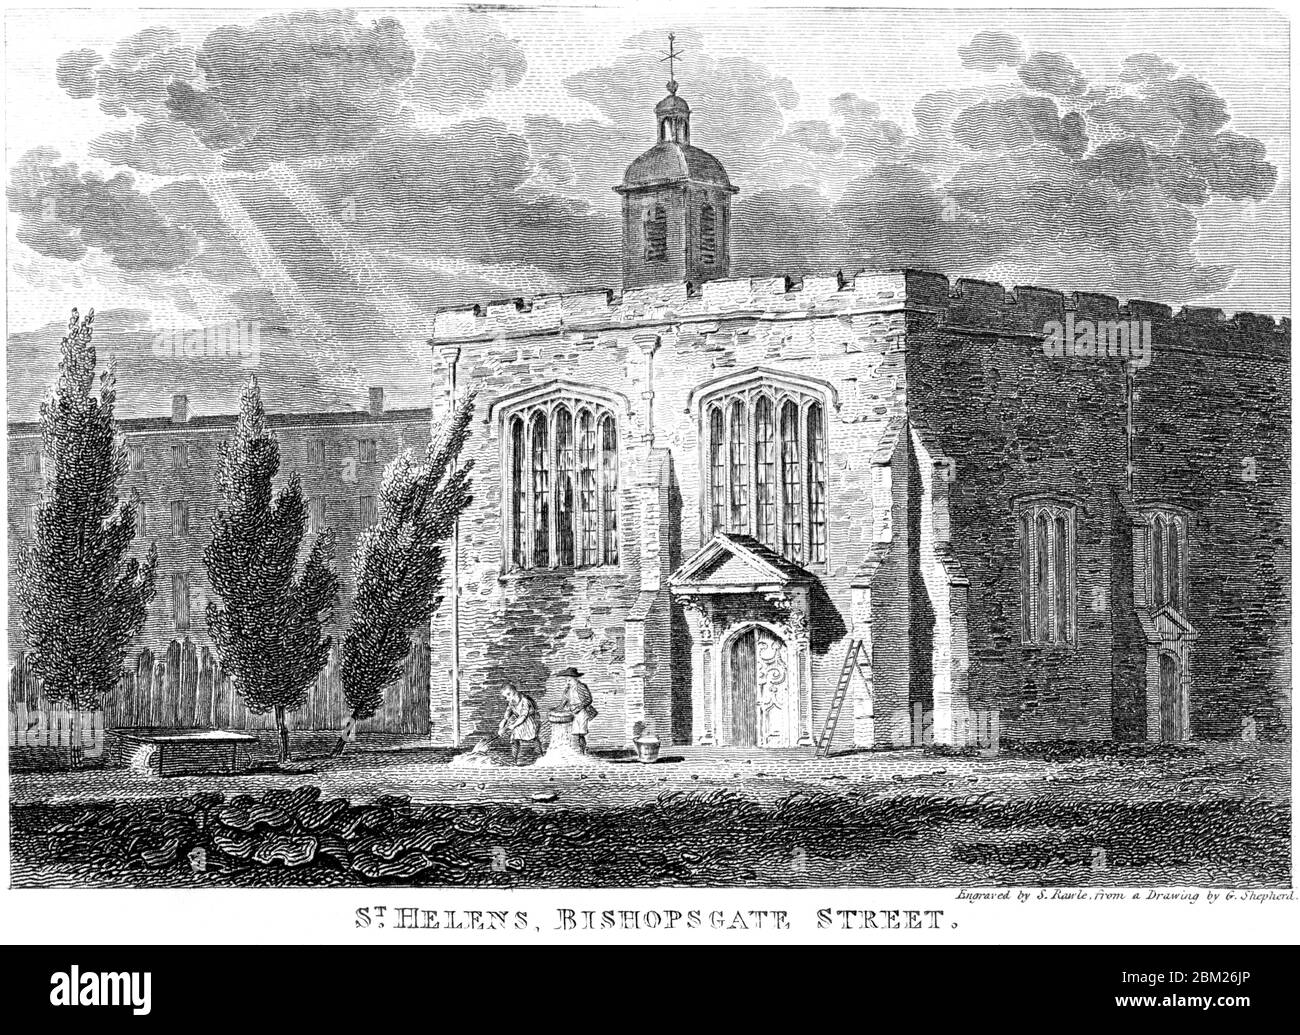 Ein Stich der St. Helens Kirche, Bishopsgate Straße, gescannt mit hoher Auflösung aus einem Buch gedruckt 1827. Ich glaubte, dass das Urheberrecht frei ist. Stockfoto